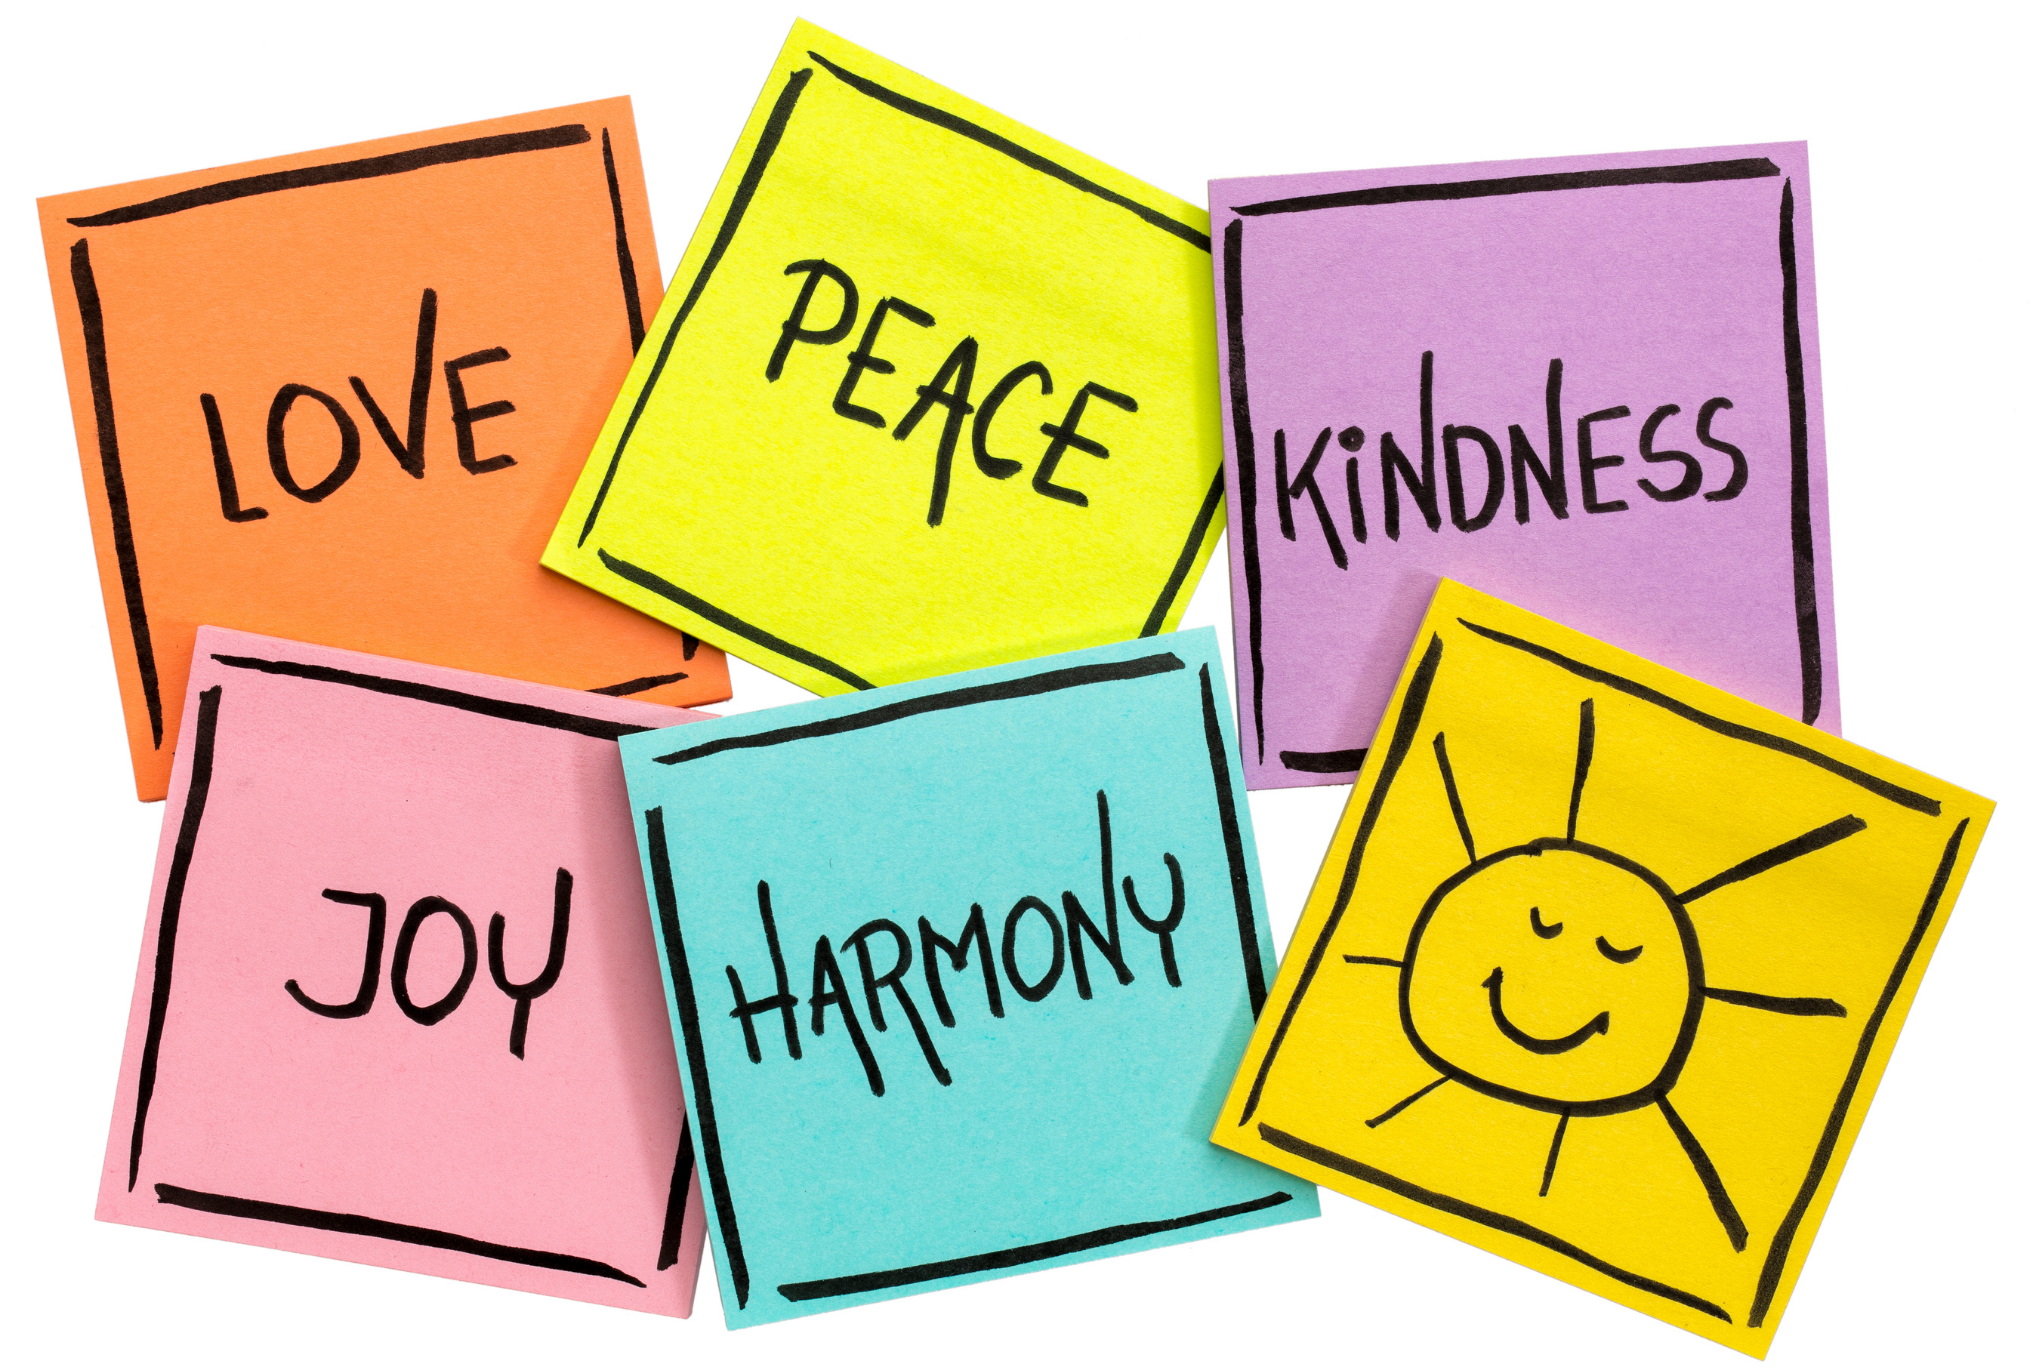 Love, peace, kindness,joy,harmony